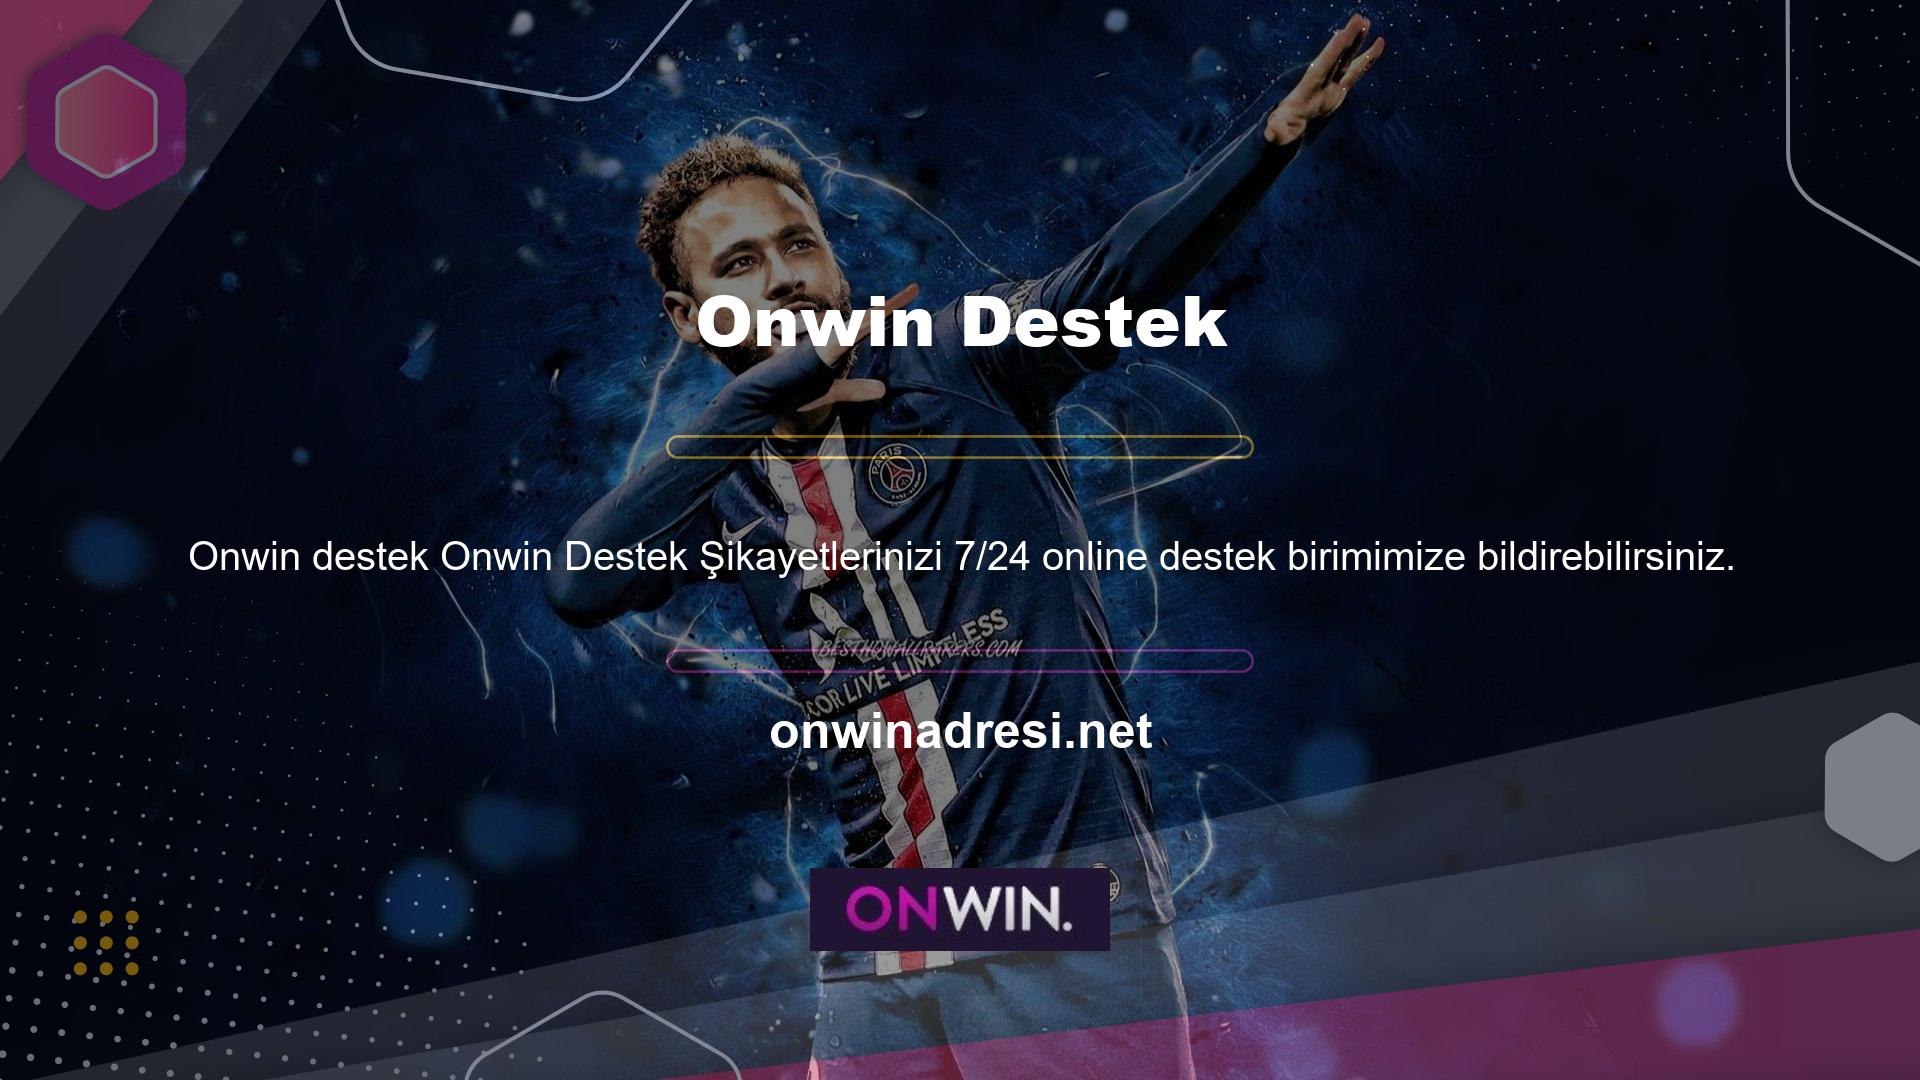 Onwin, kullanıcı odaklı bir bahis şirketi olarak bilinir